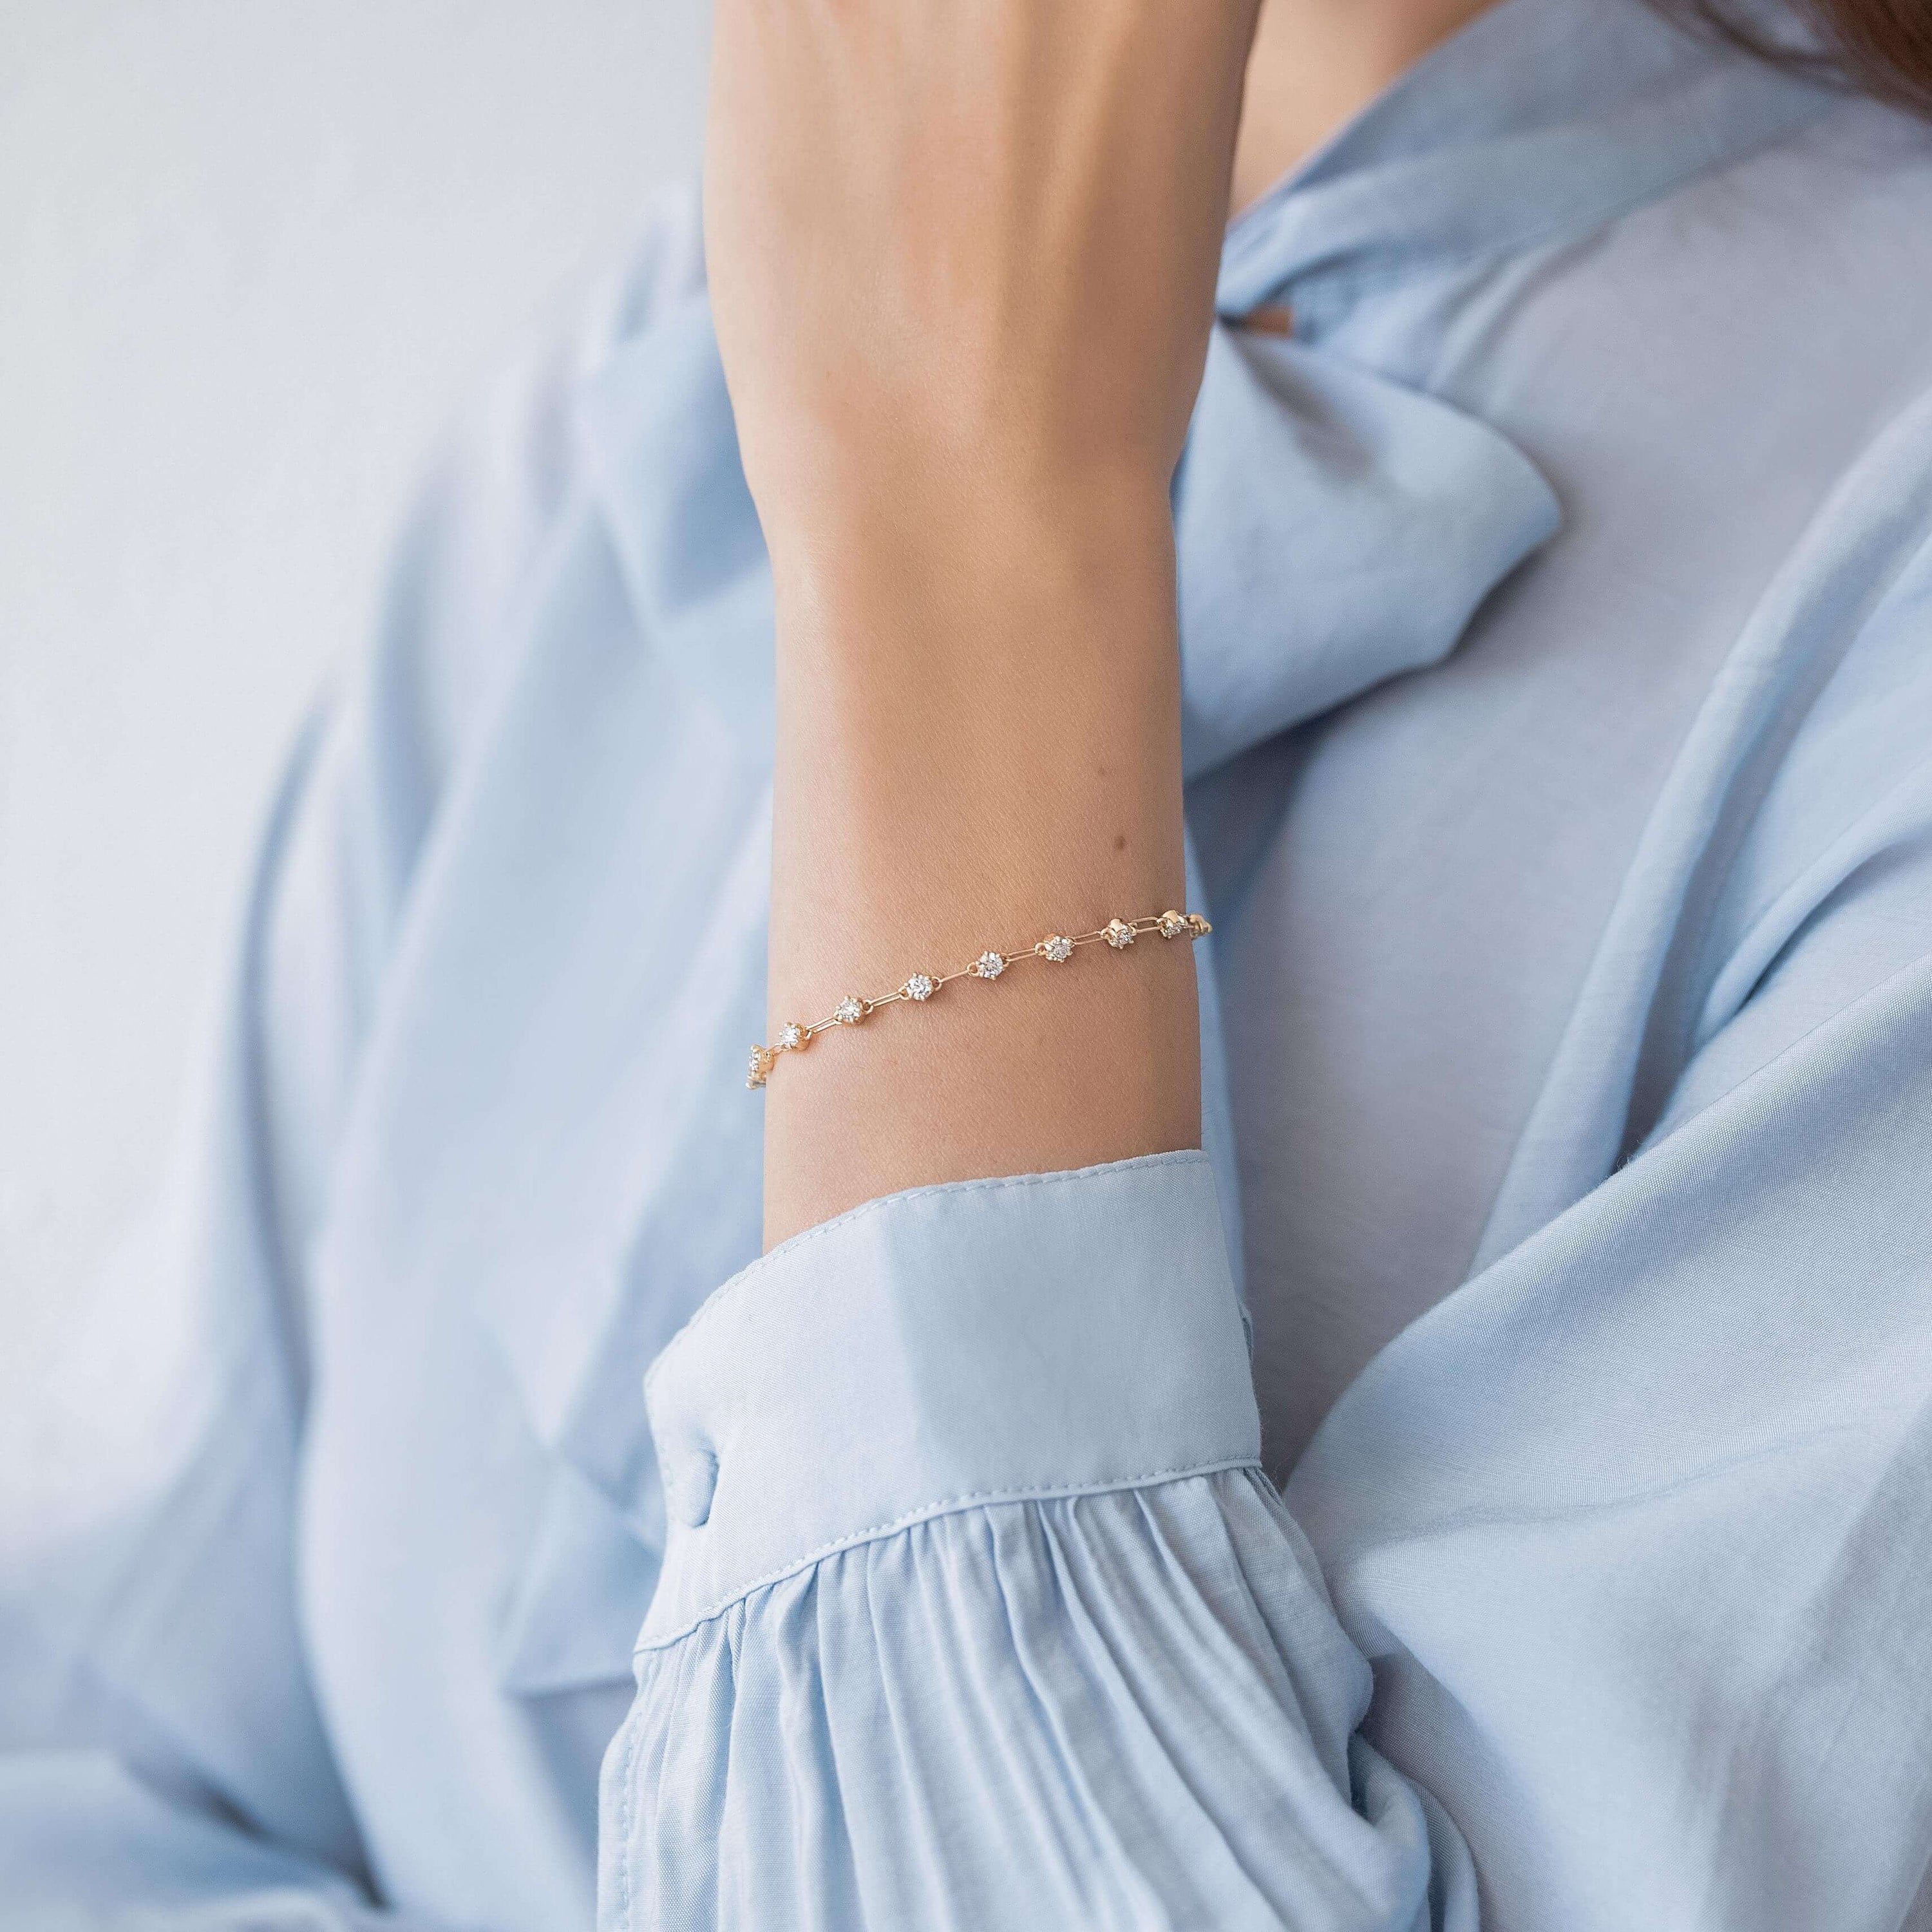 Oval Catch Clasp Chain Bracelet | Melanie Casey Fine Jewelry